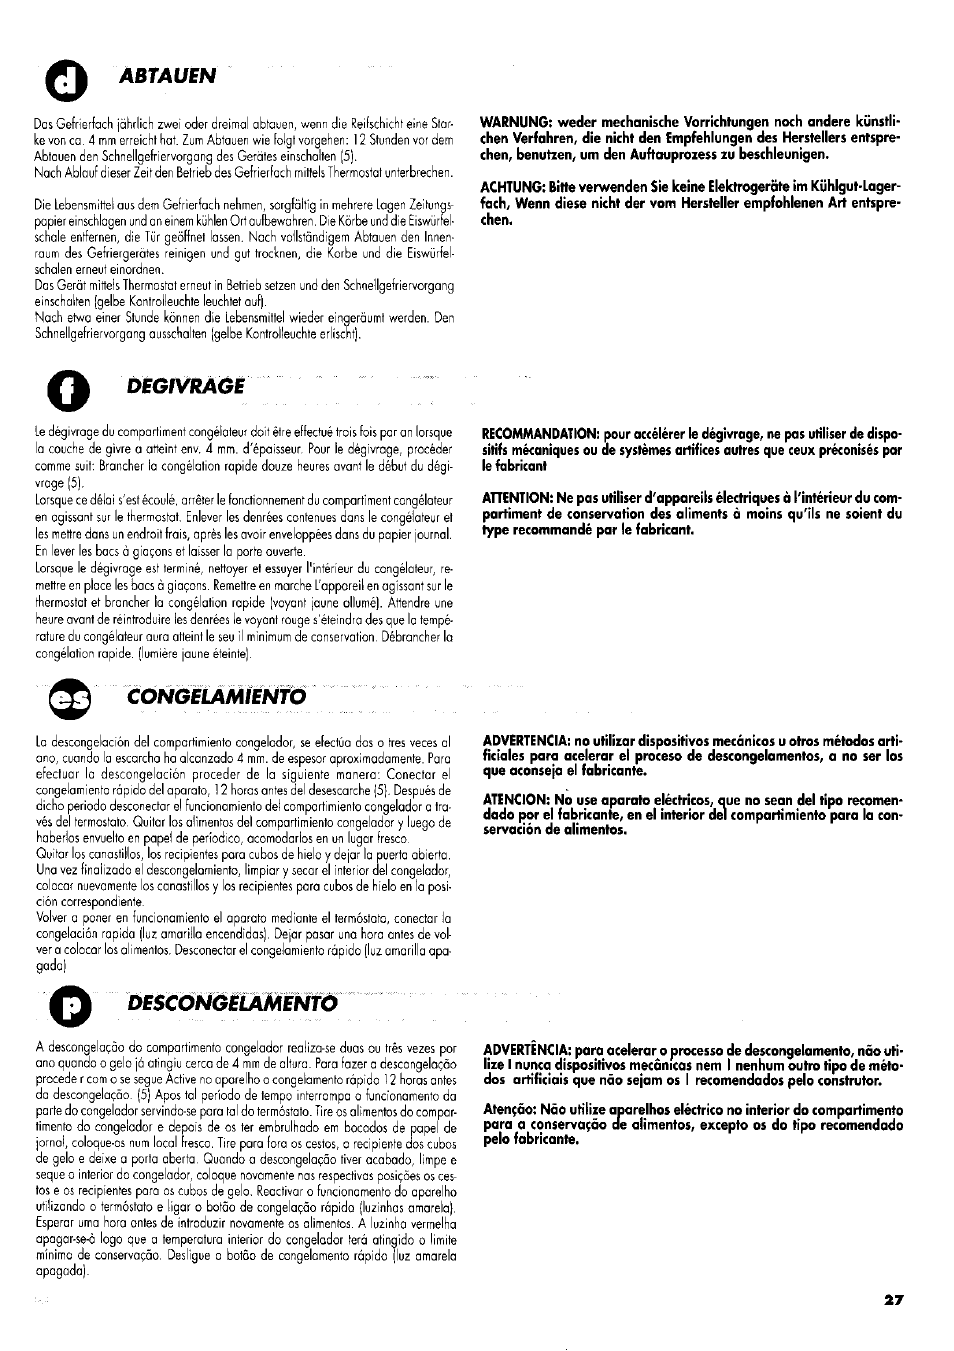 Abtauen, Descú^iíaménfo, Degivrage | ZANKER GS 105 User Manual | Page 27 / 31